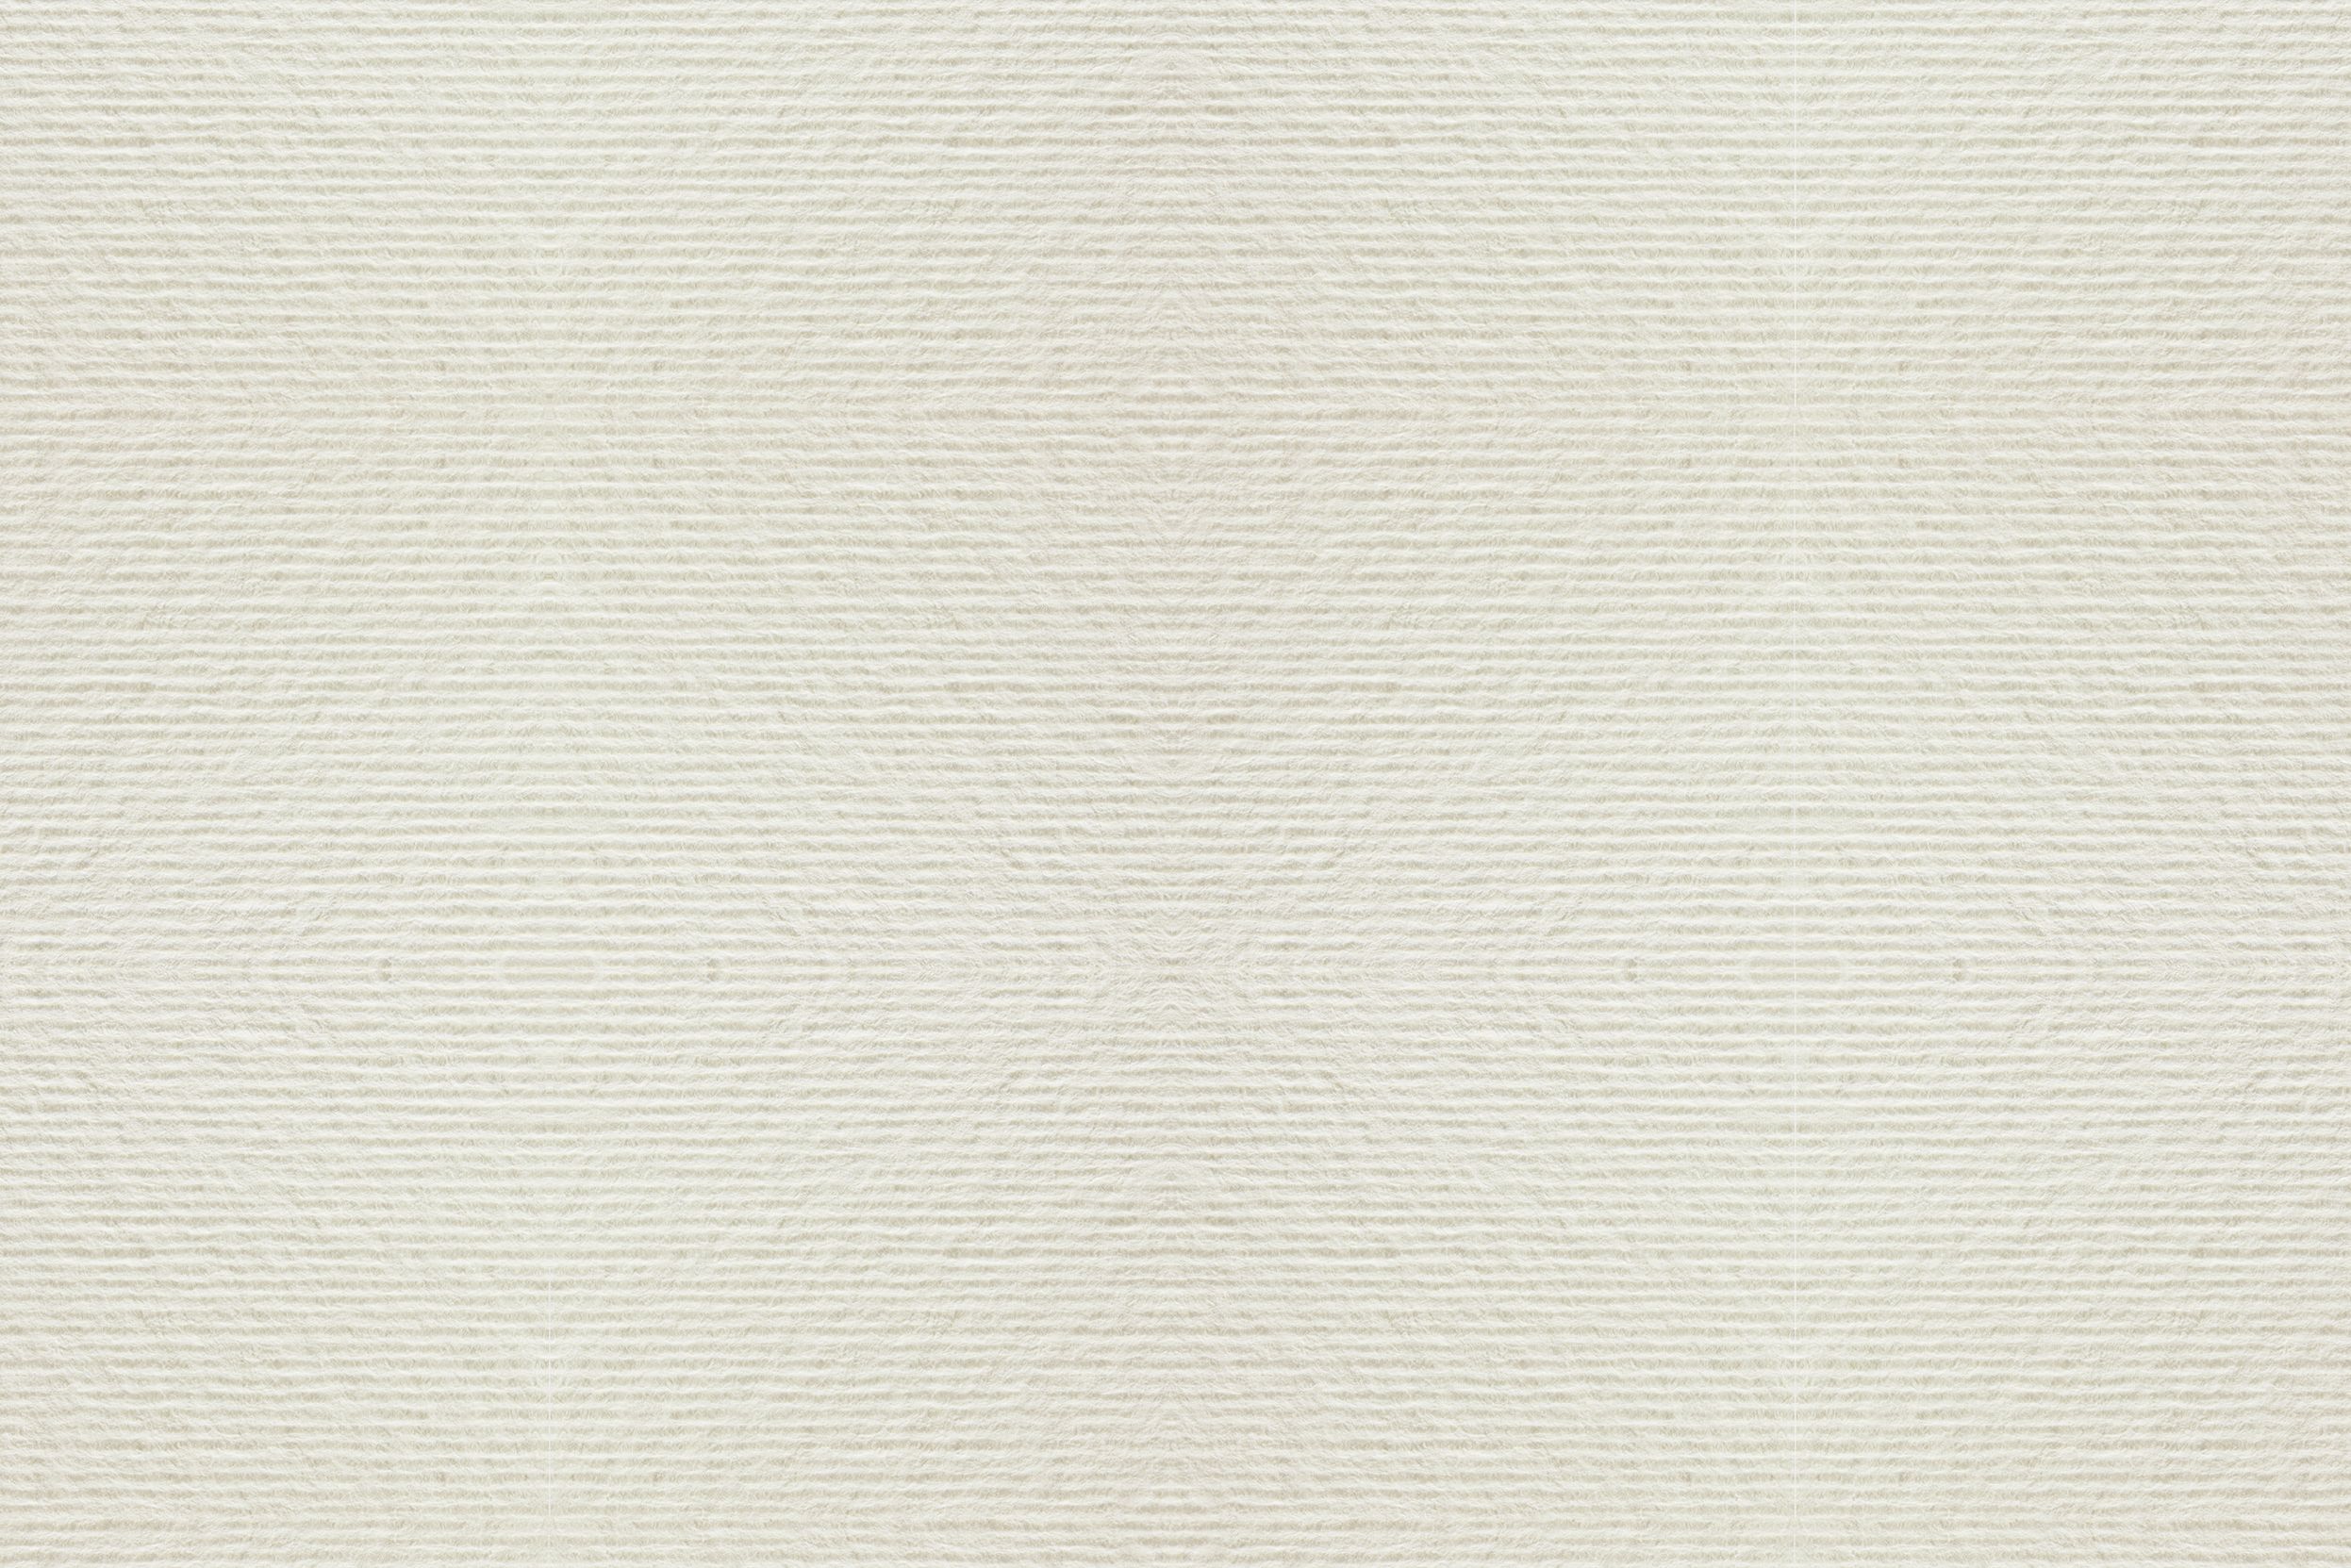 Acquerello Crème, no strip, coupe en pointe: Papier naturel ivoire de pure cellulose certifiée FSC. Surface: gaufrée avec lignes parallèles. Producteur: Fedrigoni